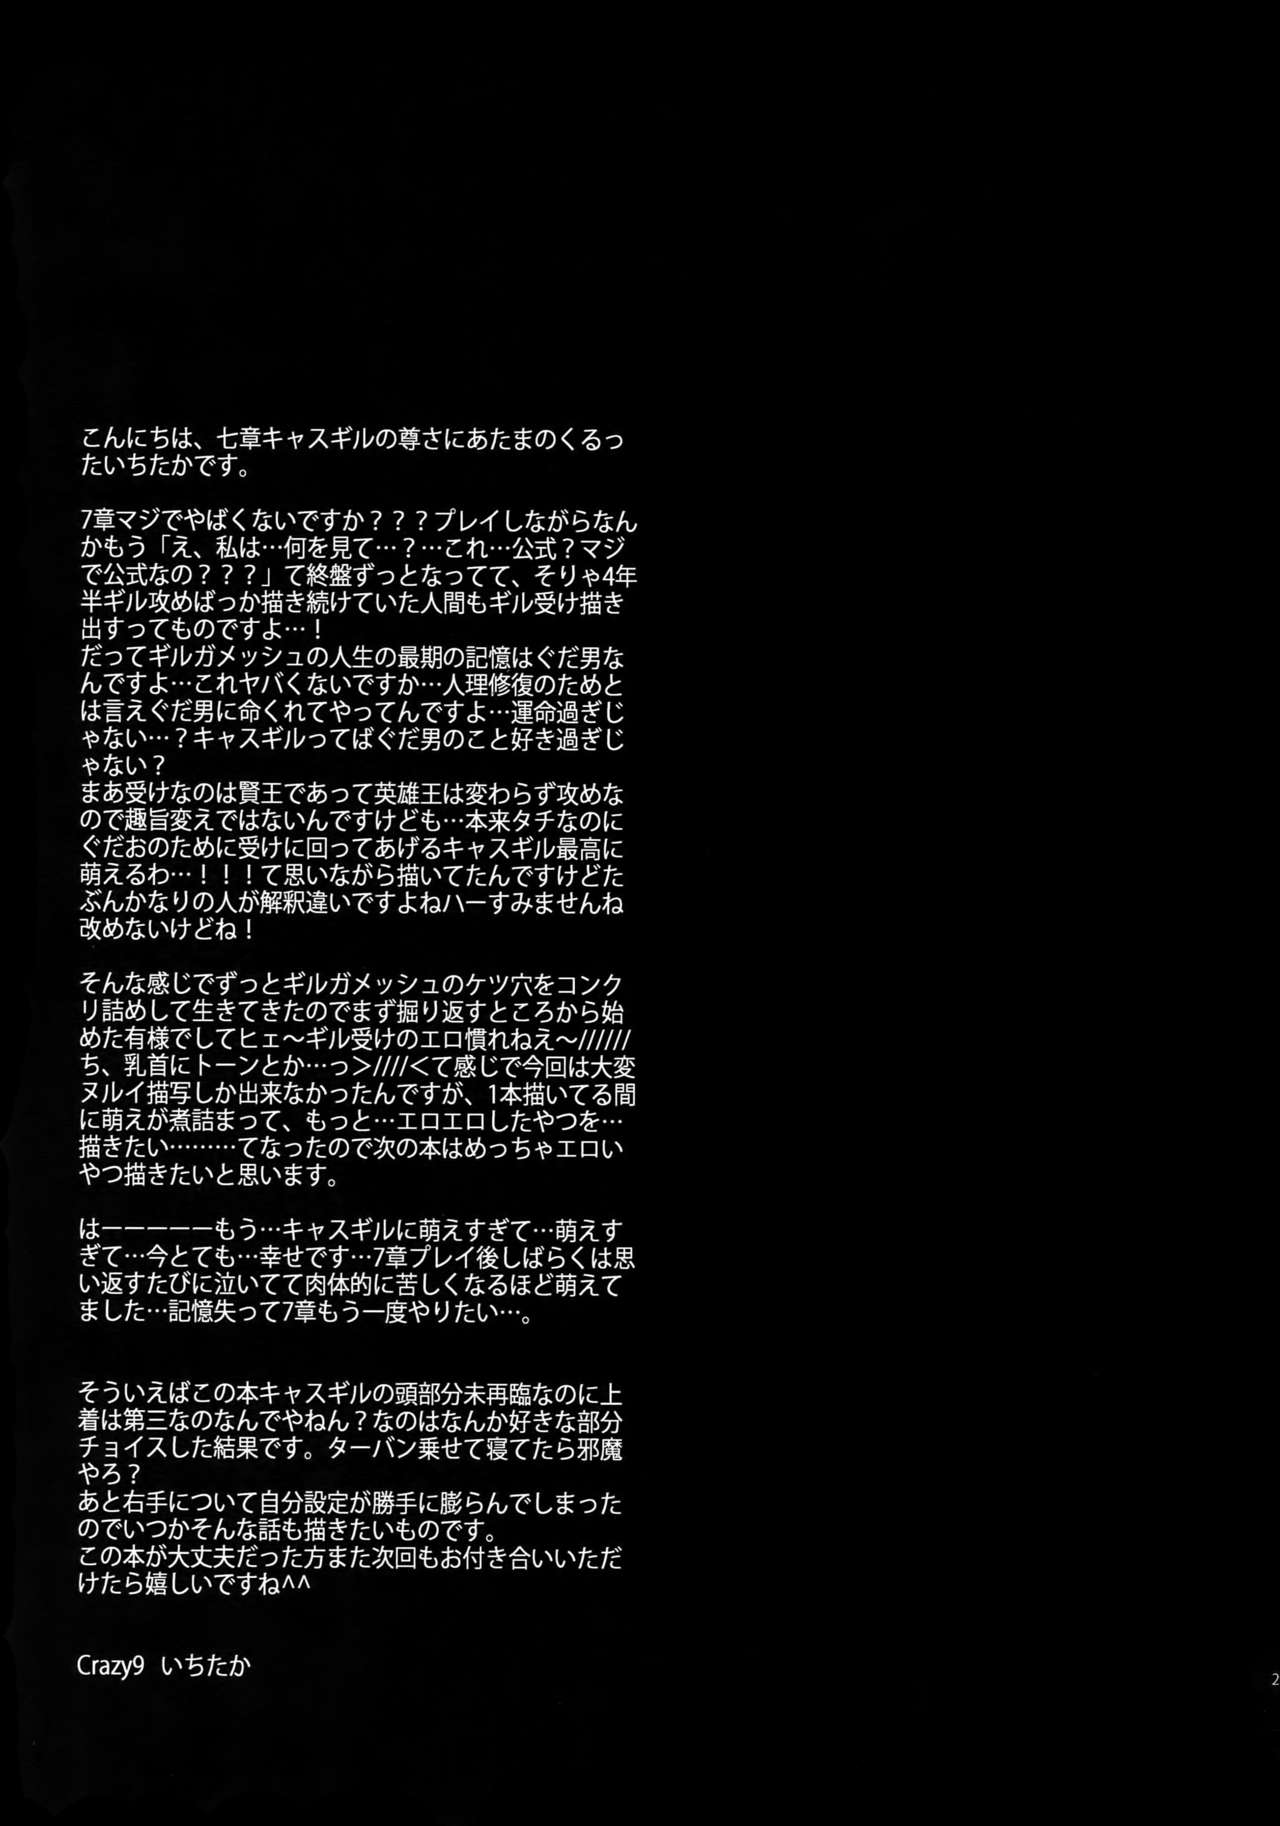 [Crazy9 (いちたか)] 深淵に至る恋 (Fate/Grand Order) [2017年6月11日]